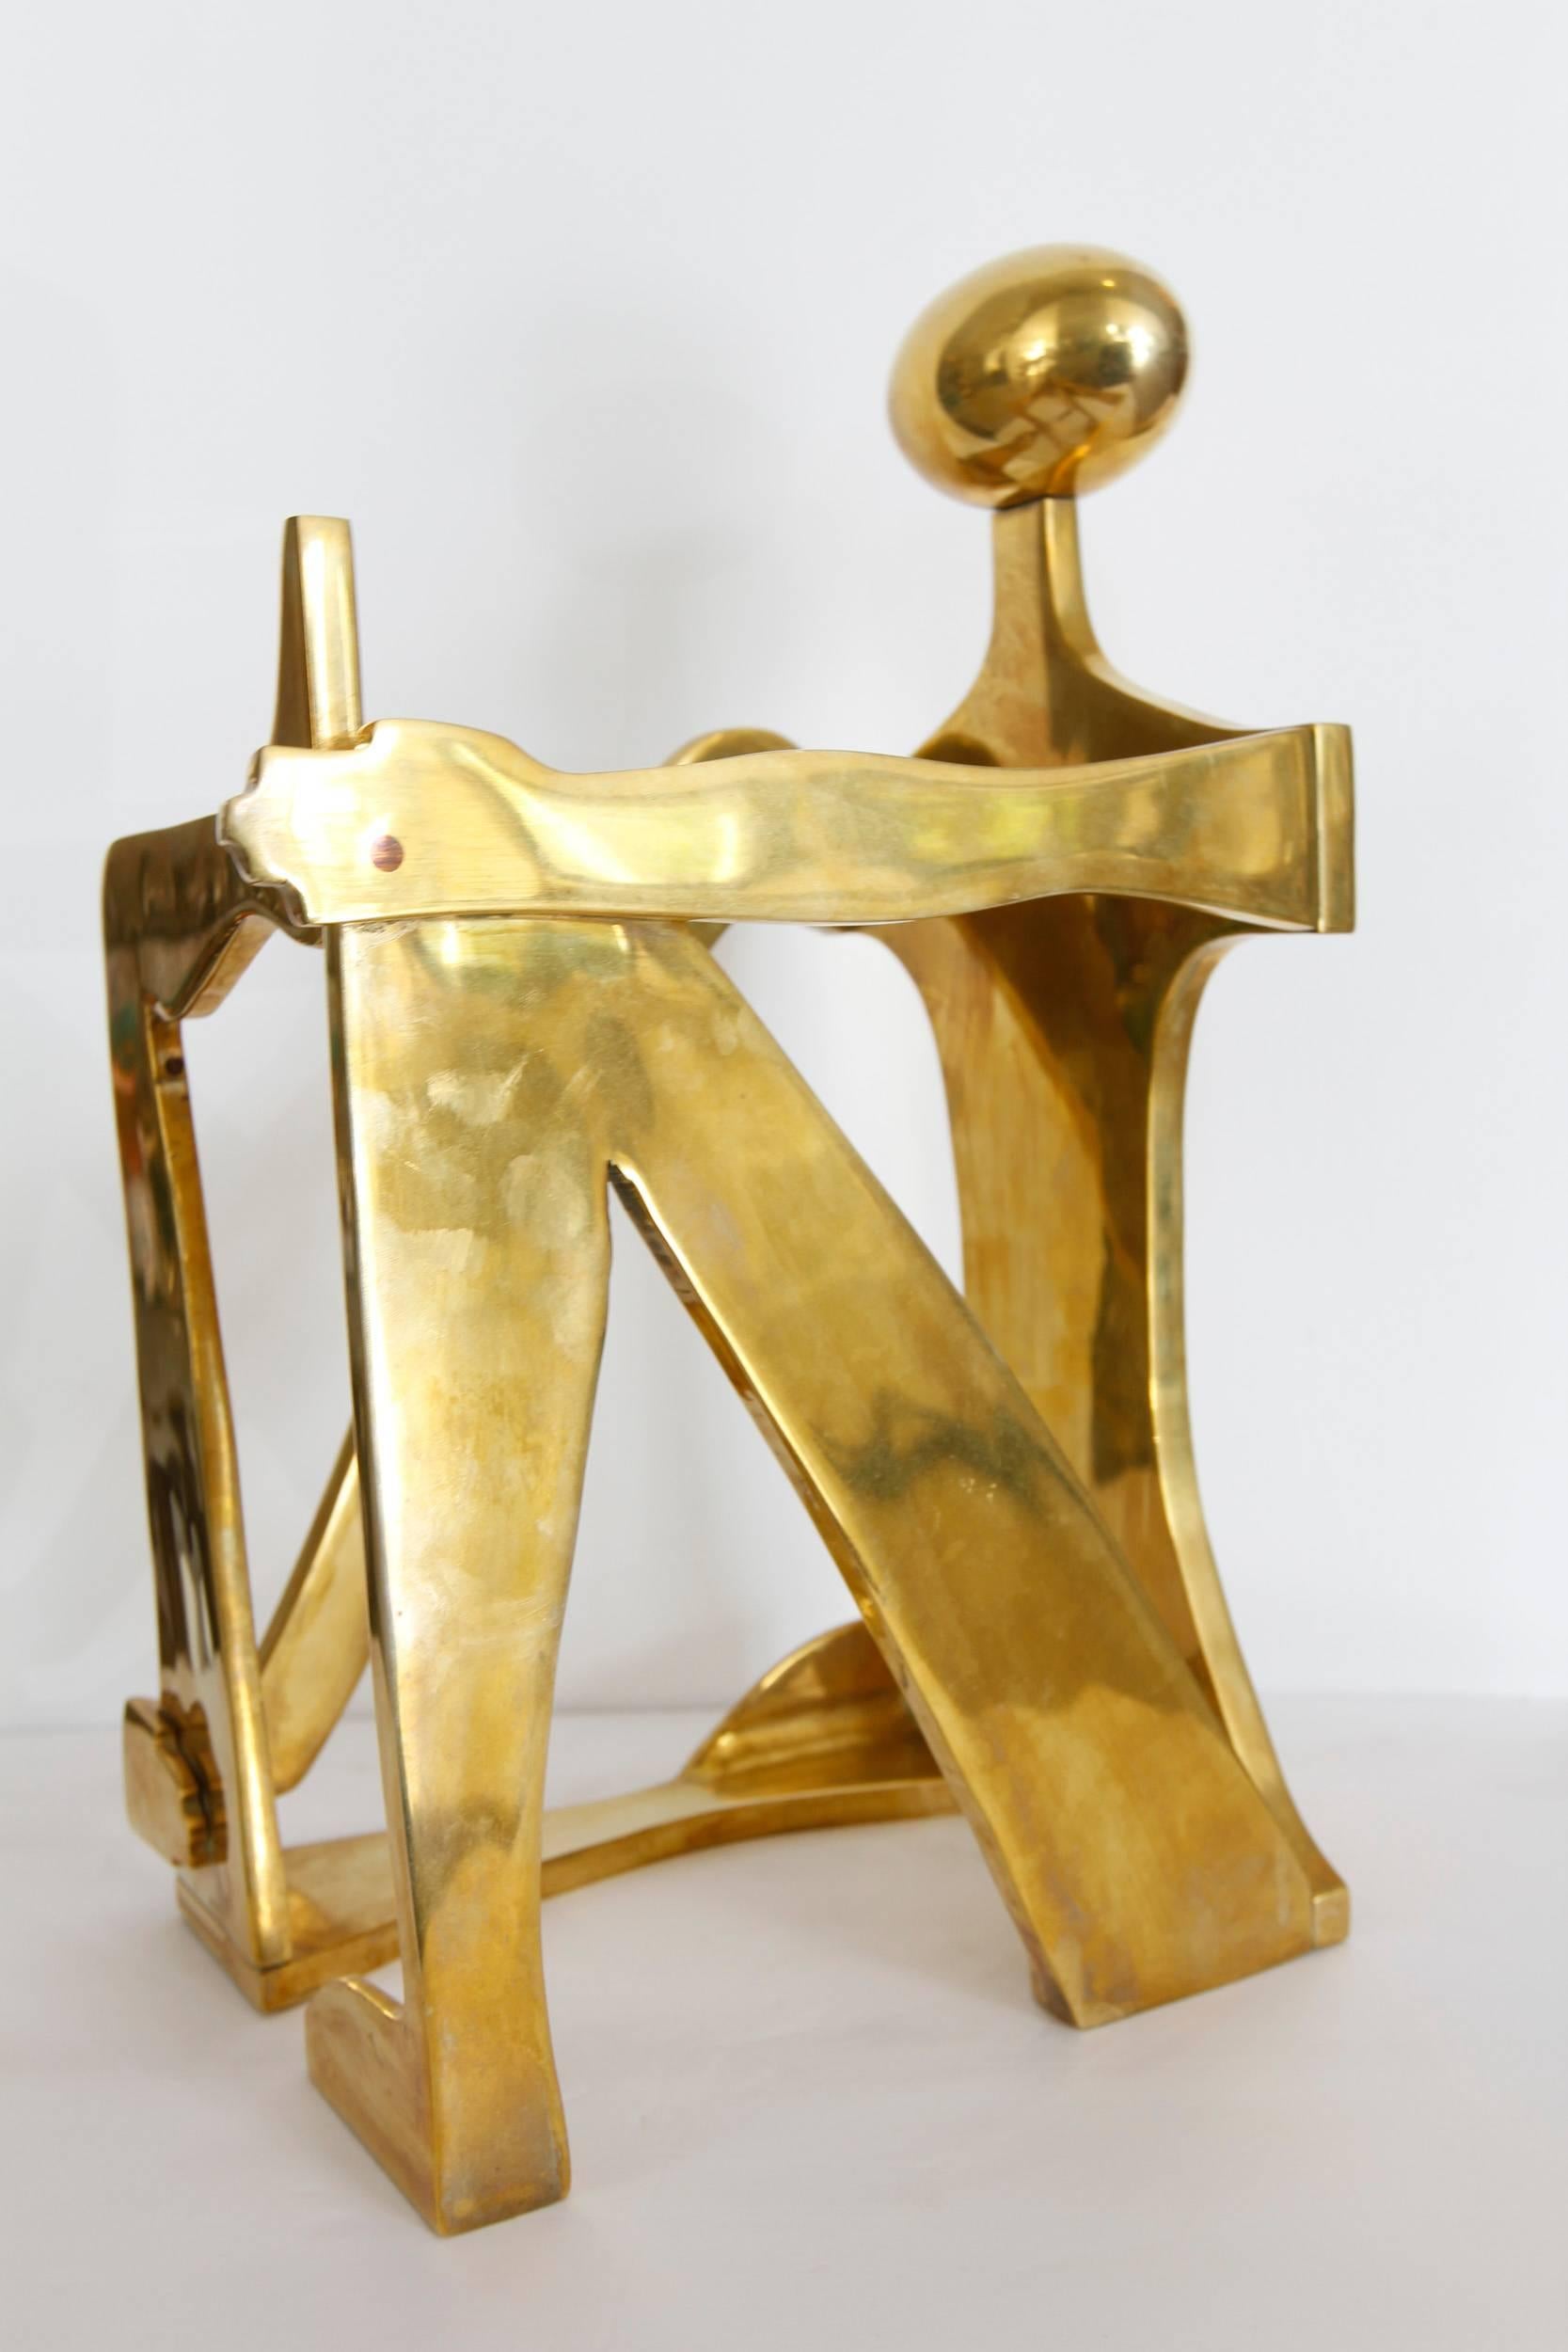 20th Century Modernist Brass Figural Sculpture by Arleen Eichengreen & Nancy Gensburg